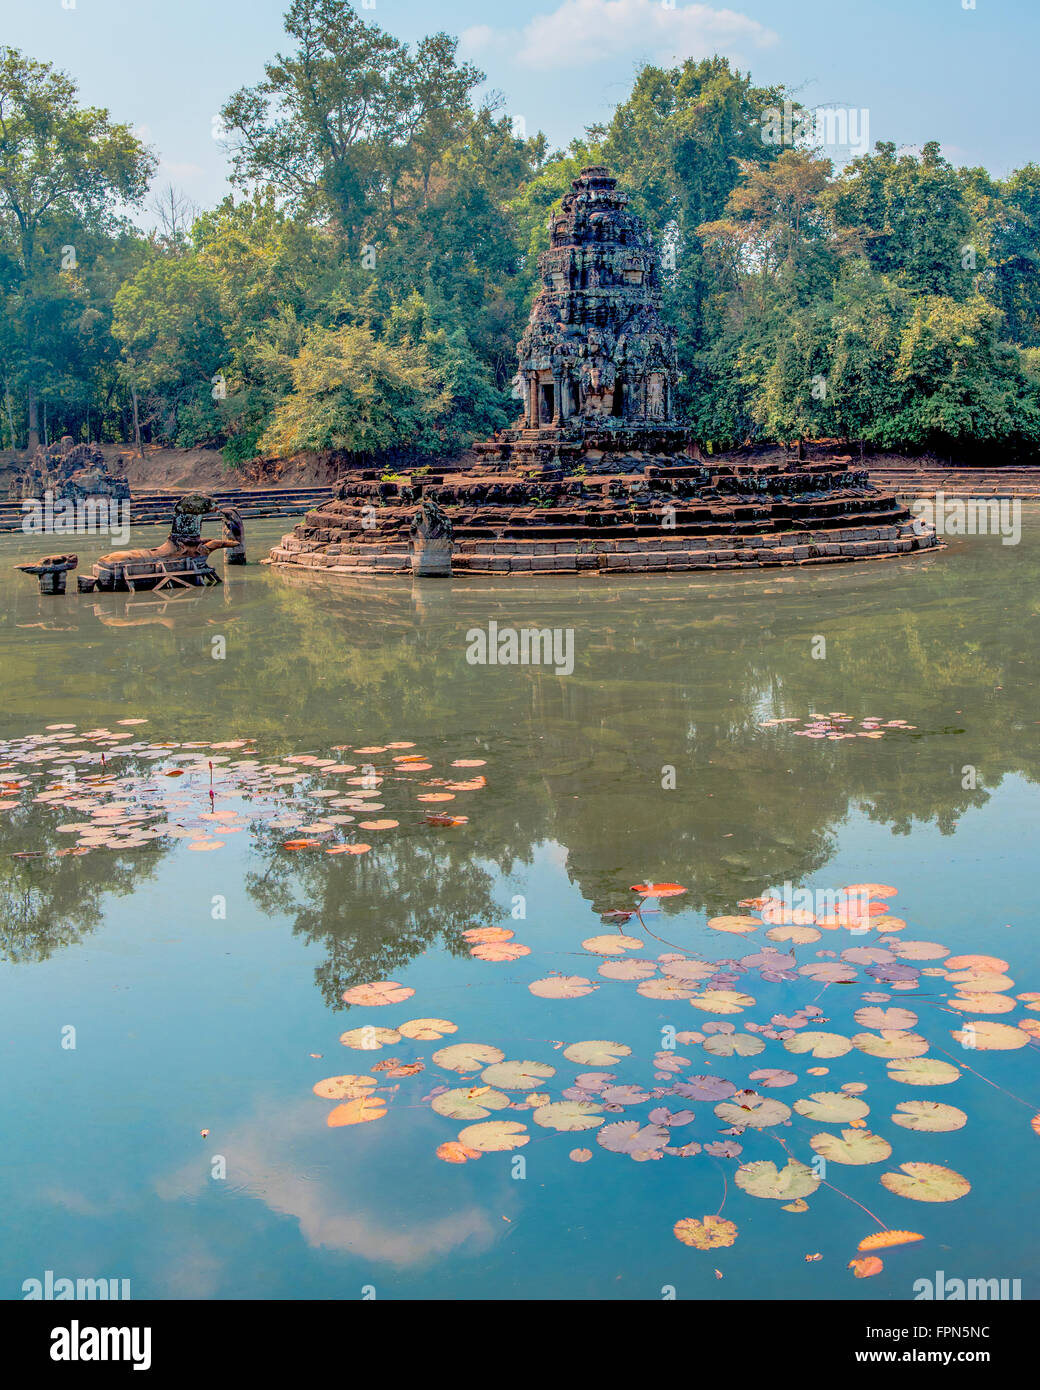 Preah Neak Poan construido por Jayavarman VII siglo XII. La piscina central con el templo de las entrelazadas Nagas (serpientes) Foto de stock